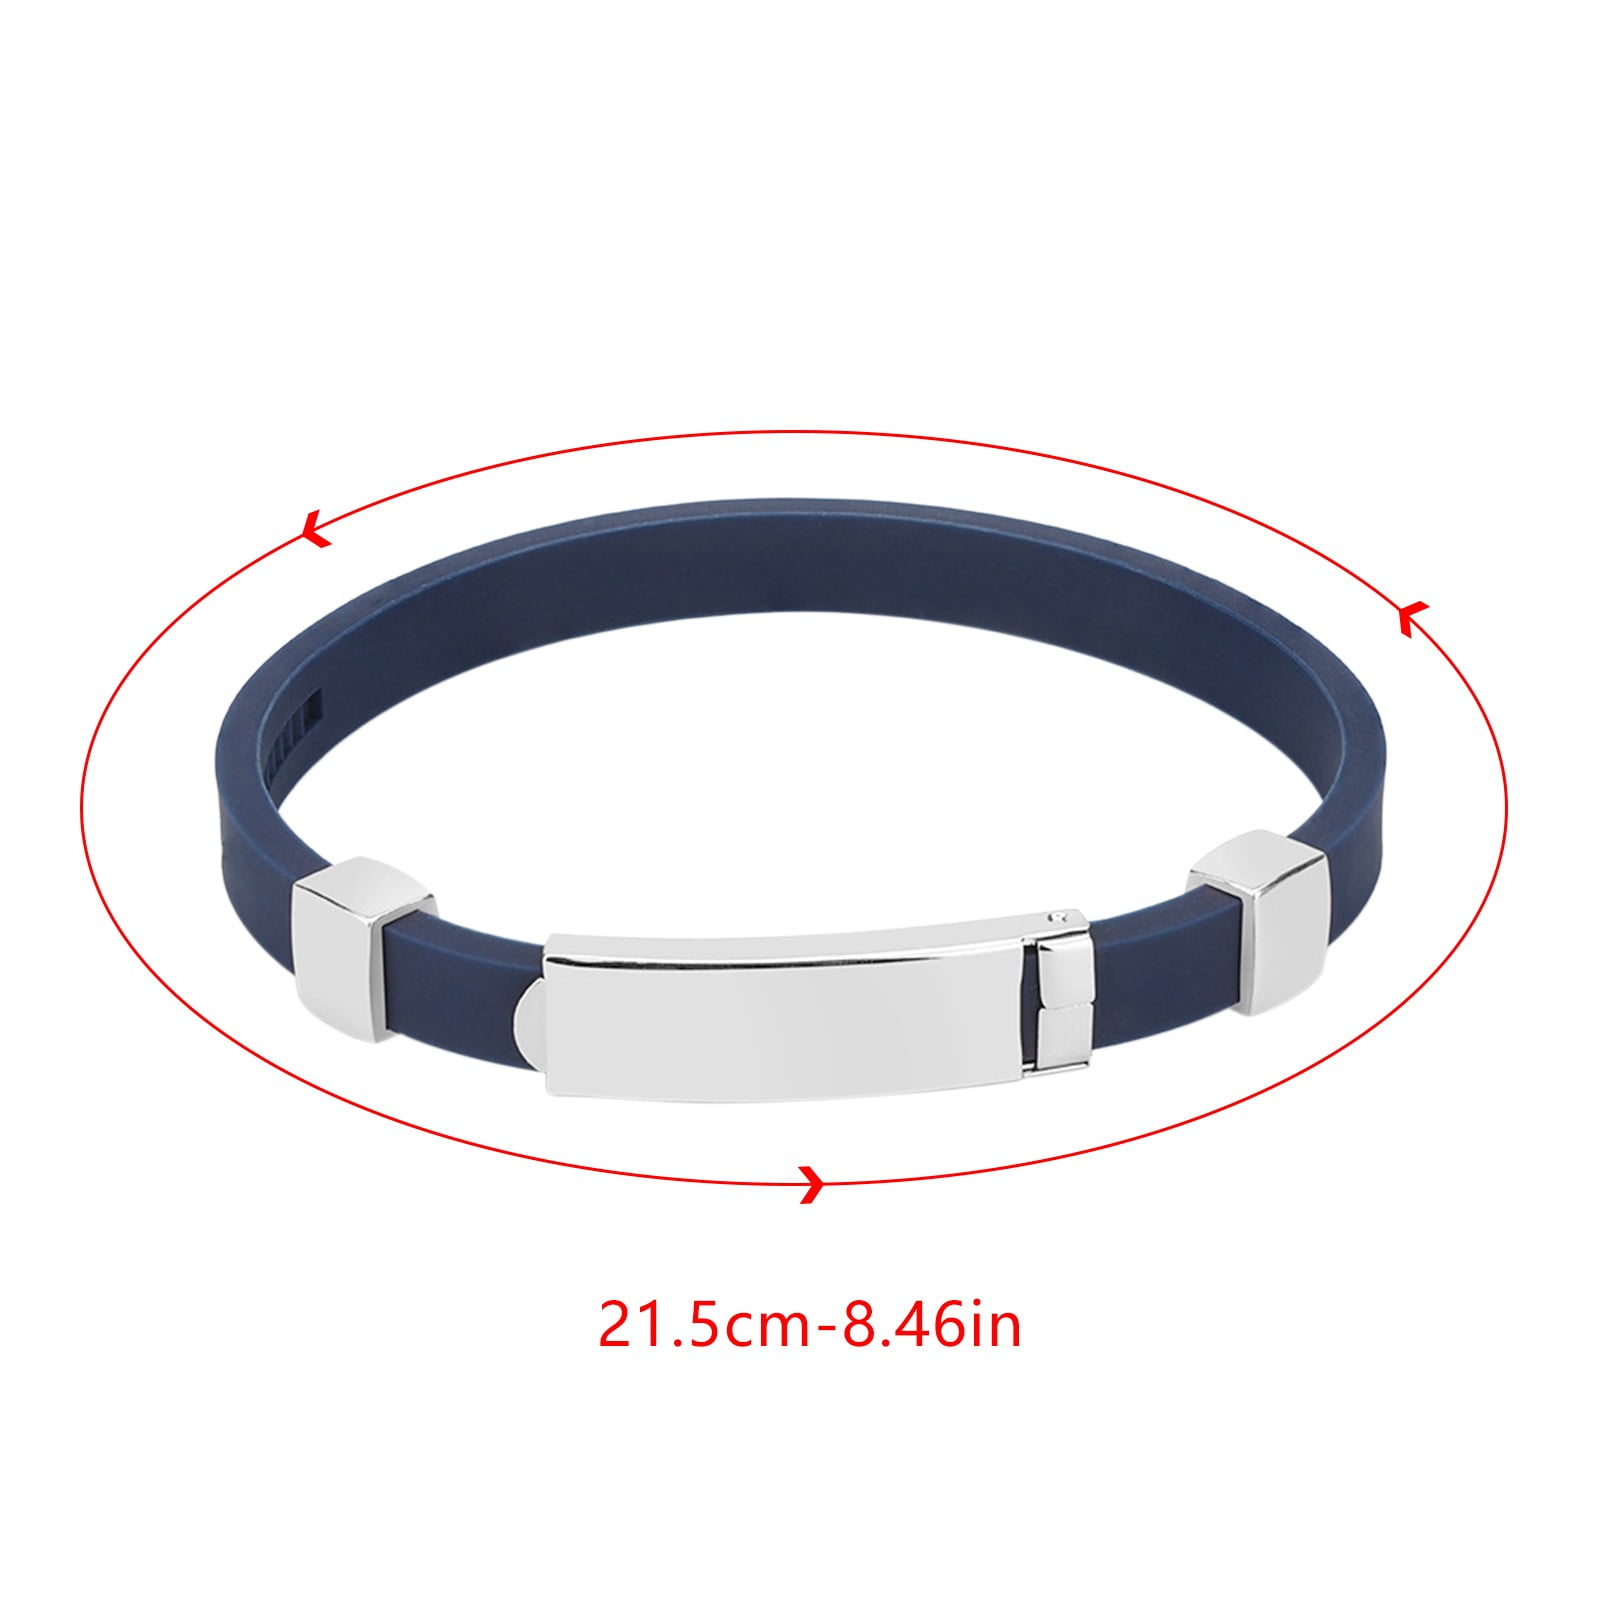 Balance power wristband - Balance Extreme - Hologram silicone band - xtreme  | eBay